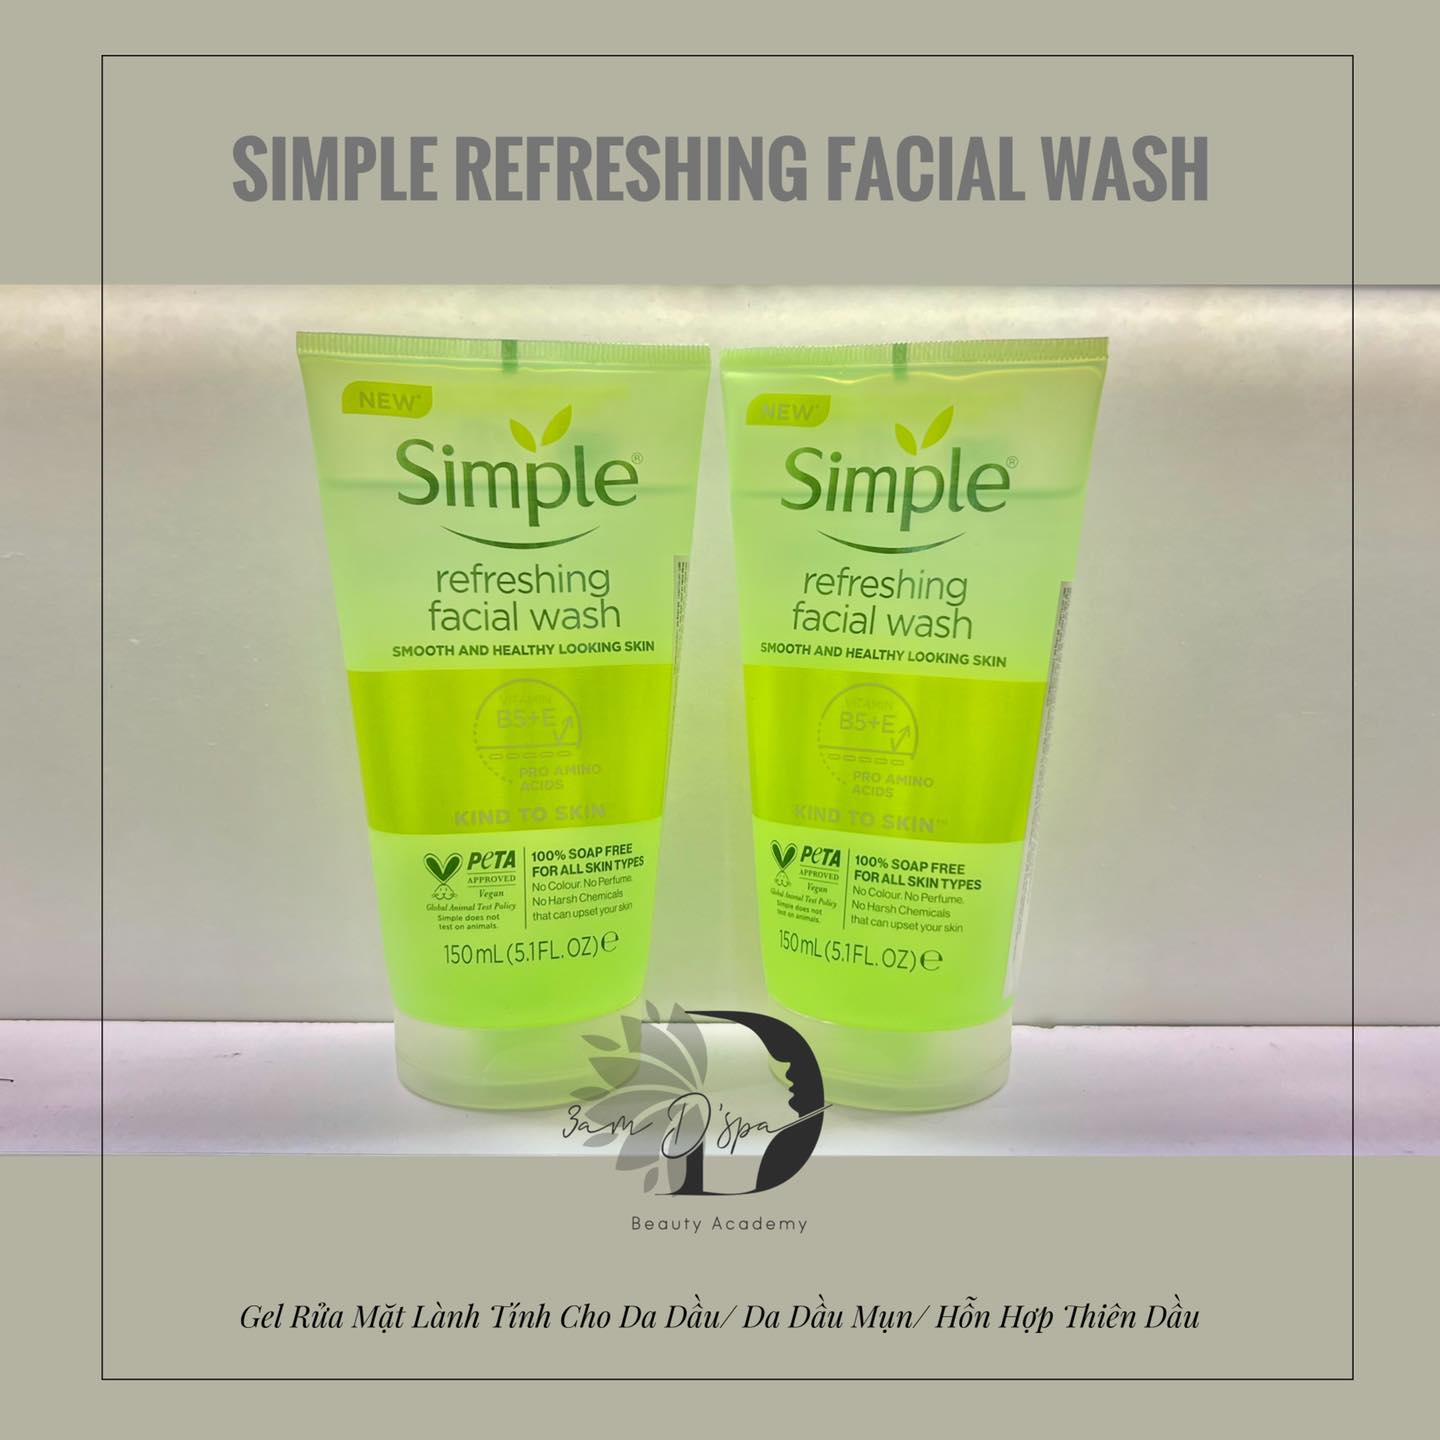 Sữa rửa mặt Simple Refreshing Facial Wash Siêu dịu nhẹ cho da dầu/ da dầu mụn/ da dầu mụn kích ứng/ hỗn hợp thiên dầu :